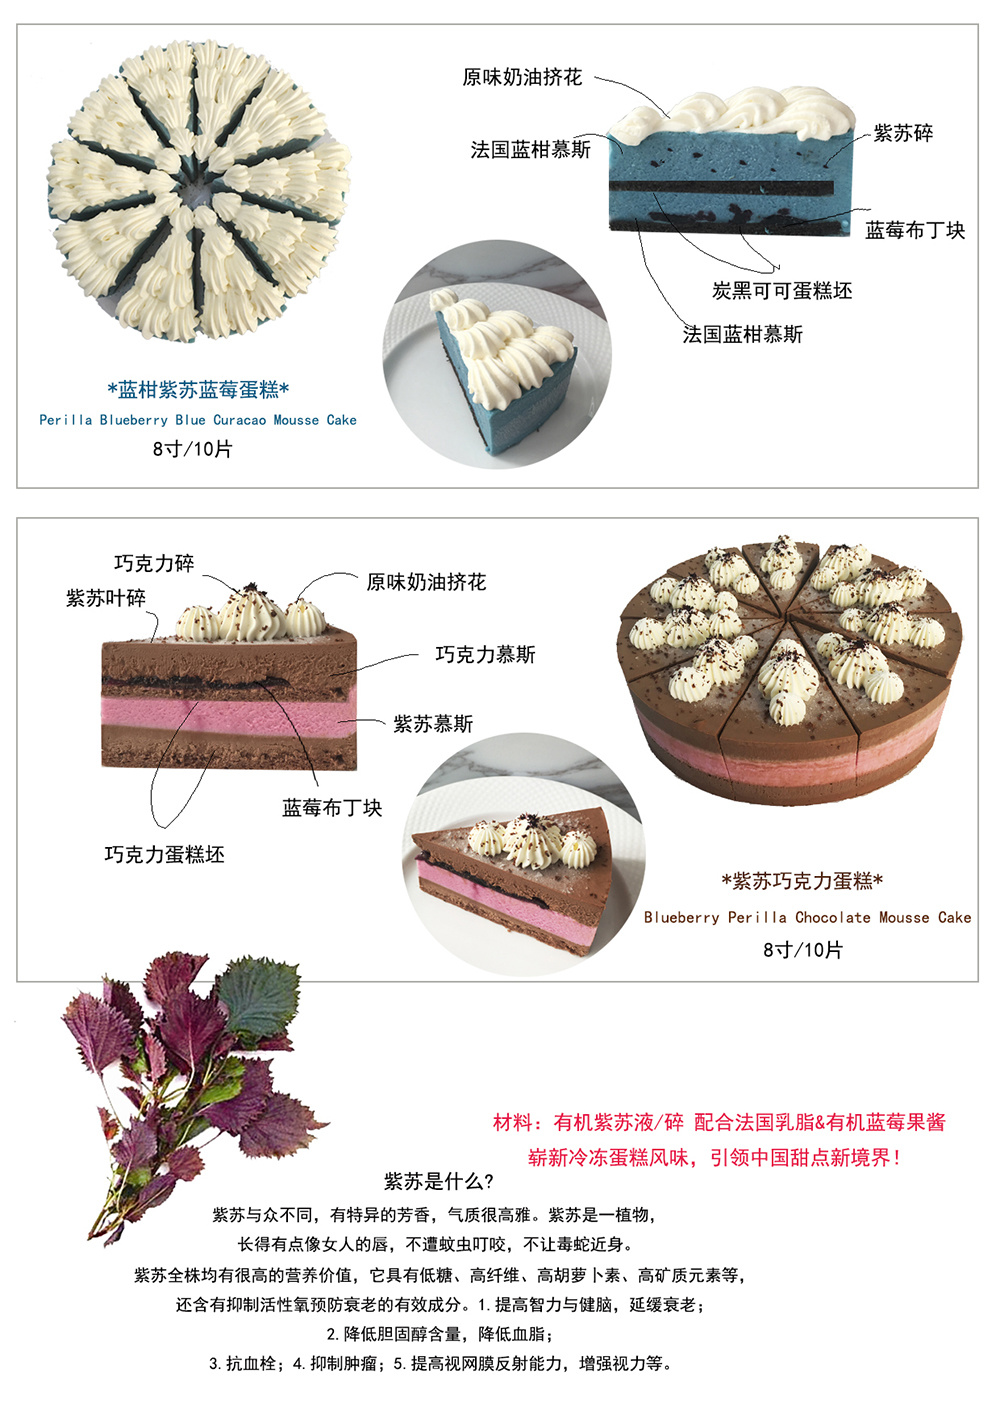 蓝柑紫苏蓝莓蛋糕/紫苏巧克力蛋糕